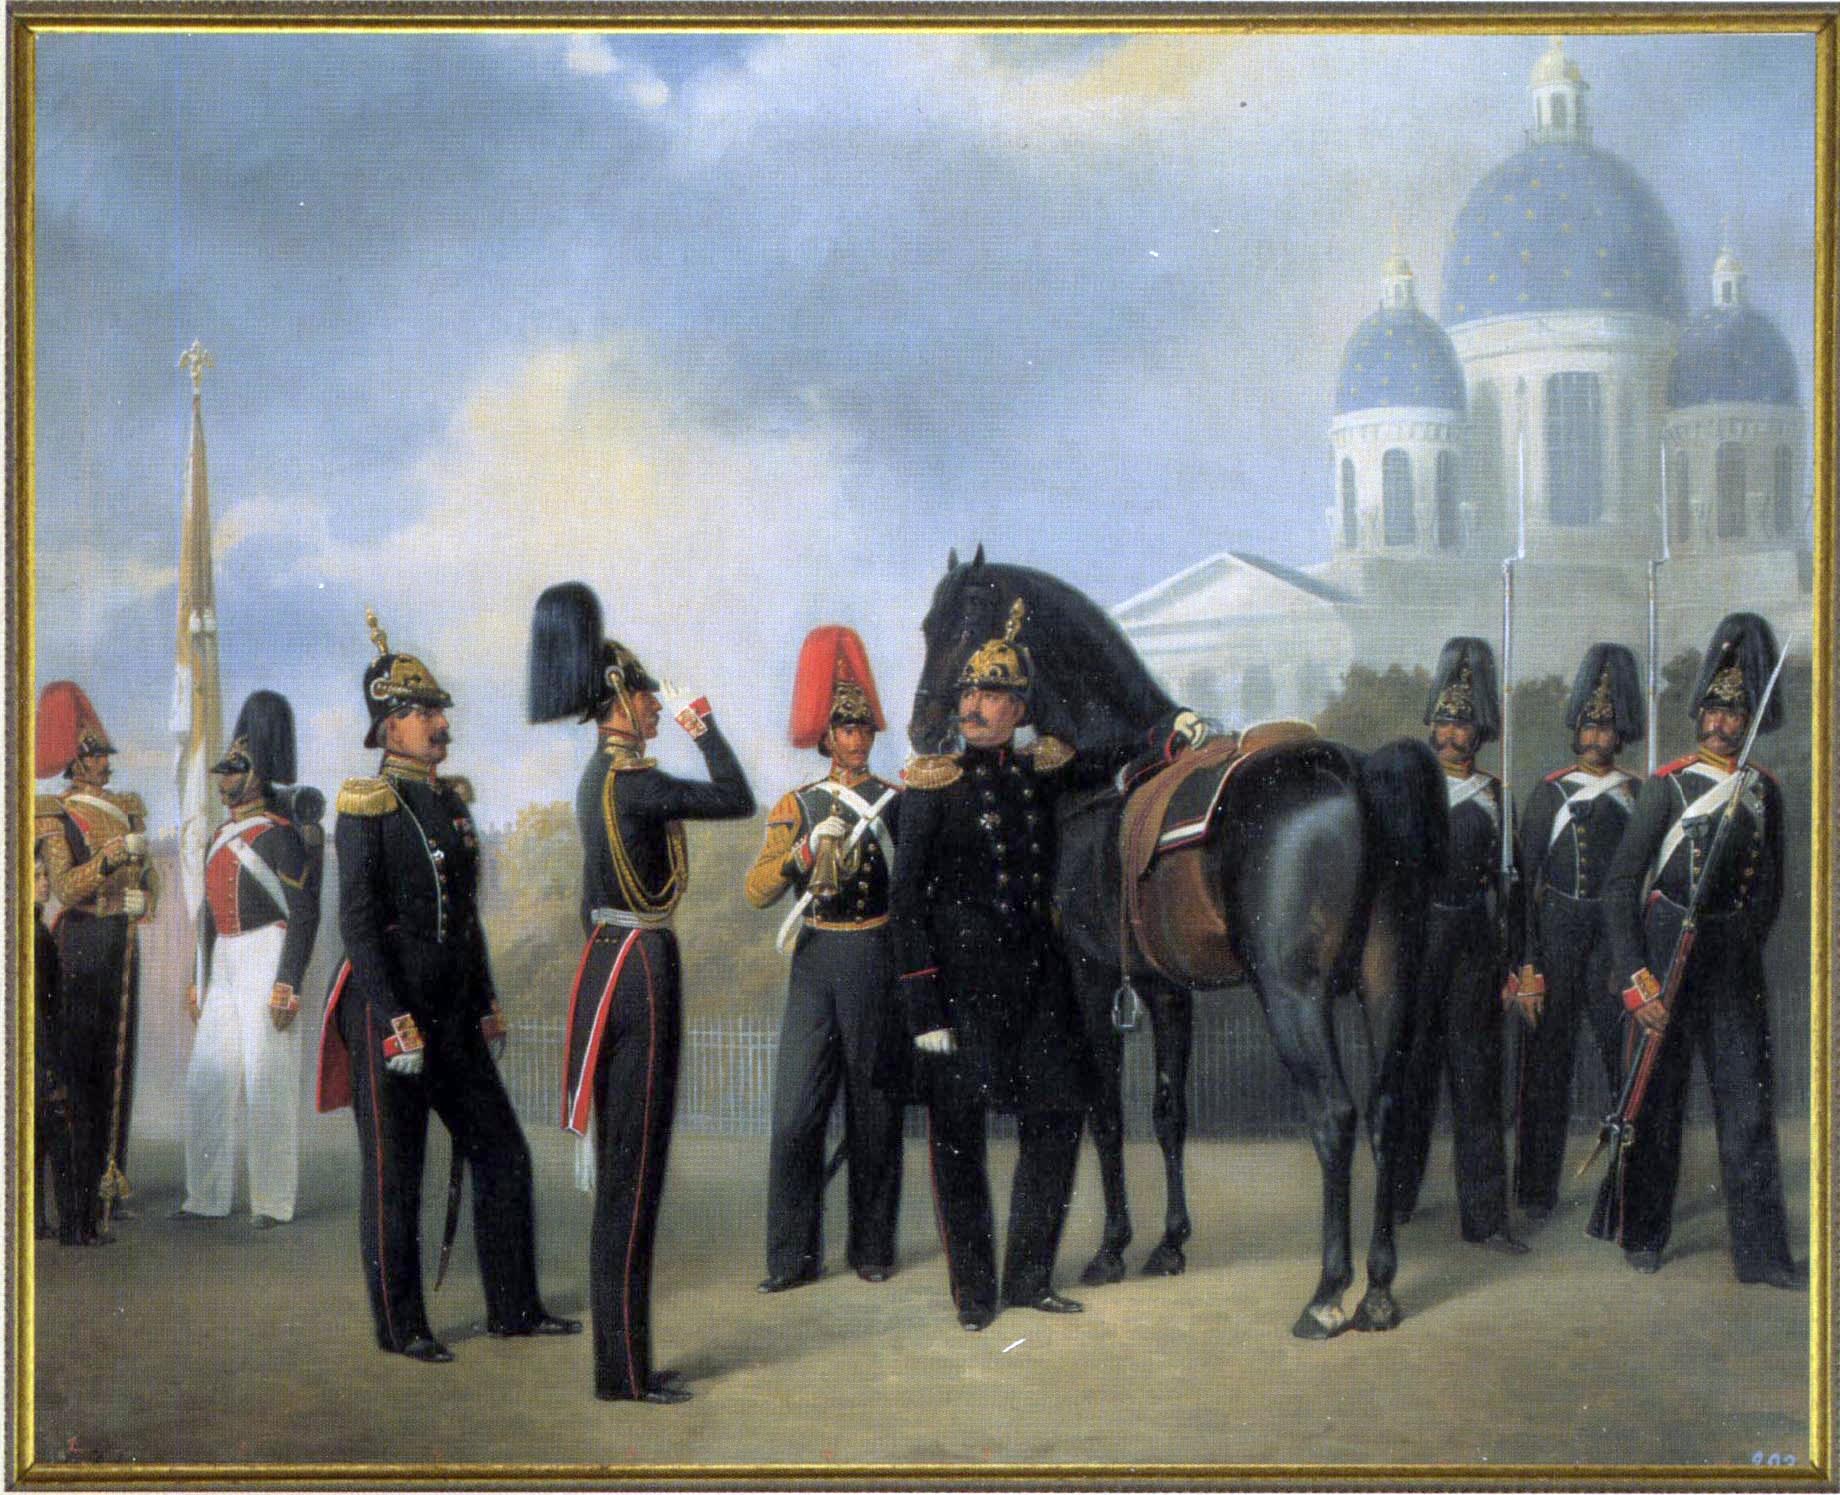 Гвардии измайловский полк. Гебенс лейб-гвардии Измайловский полк. Лейб гвардии Измайловский полк форма. Измайловский лейб-гвардии полк 1860.